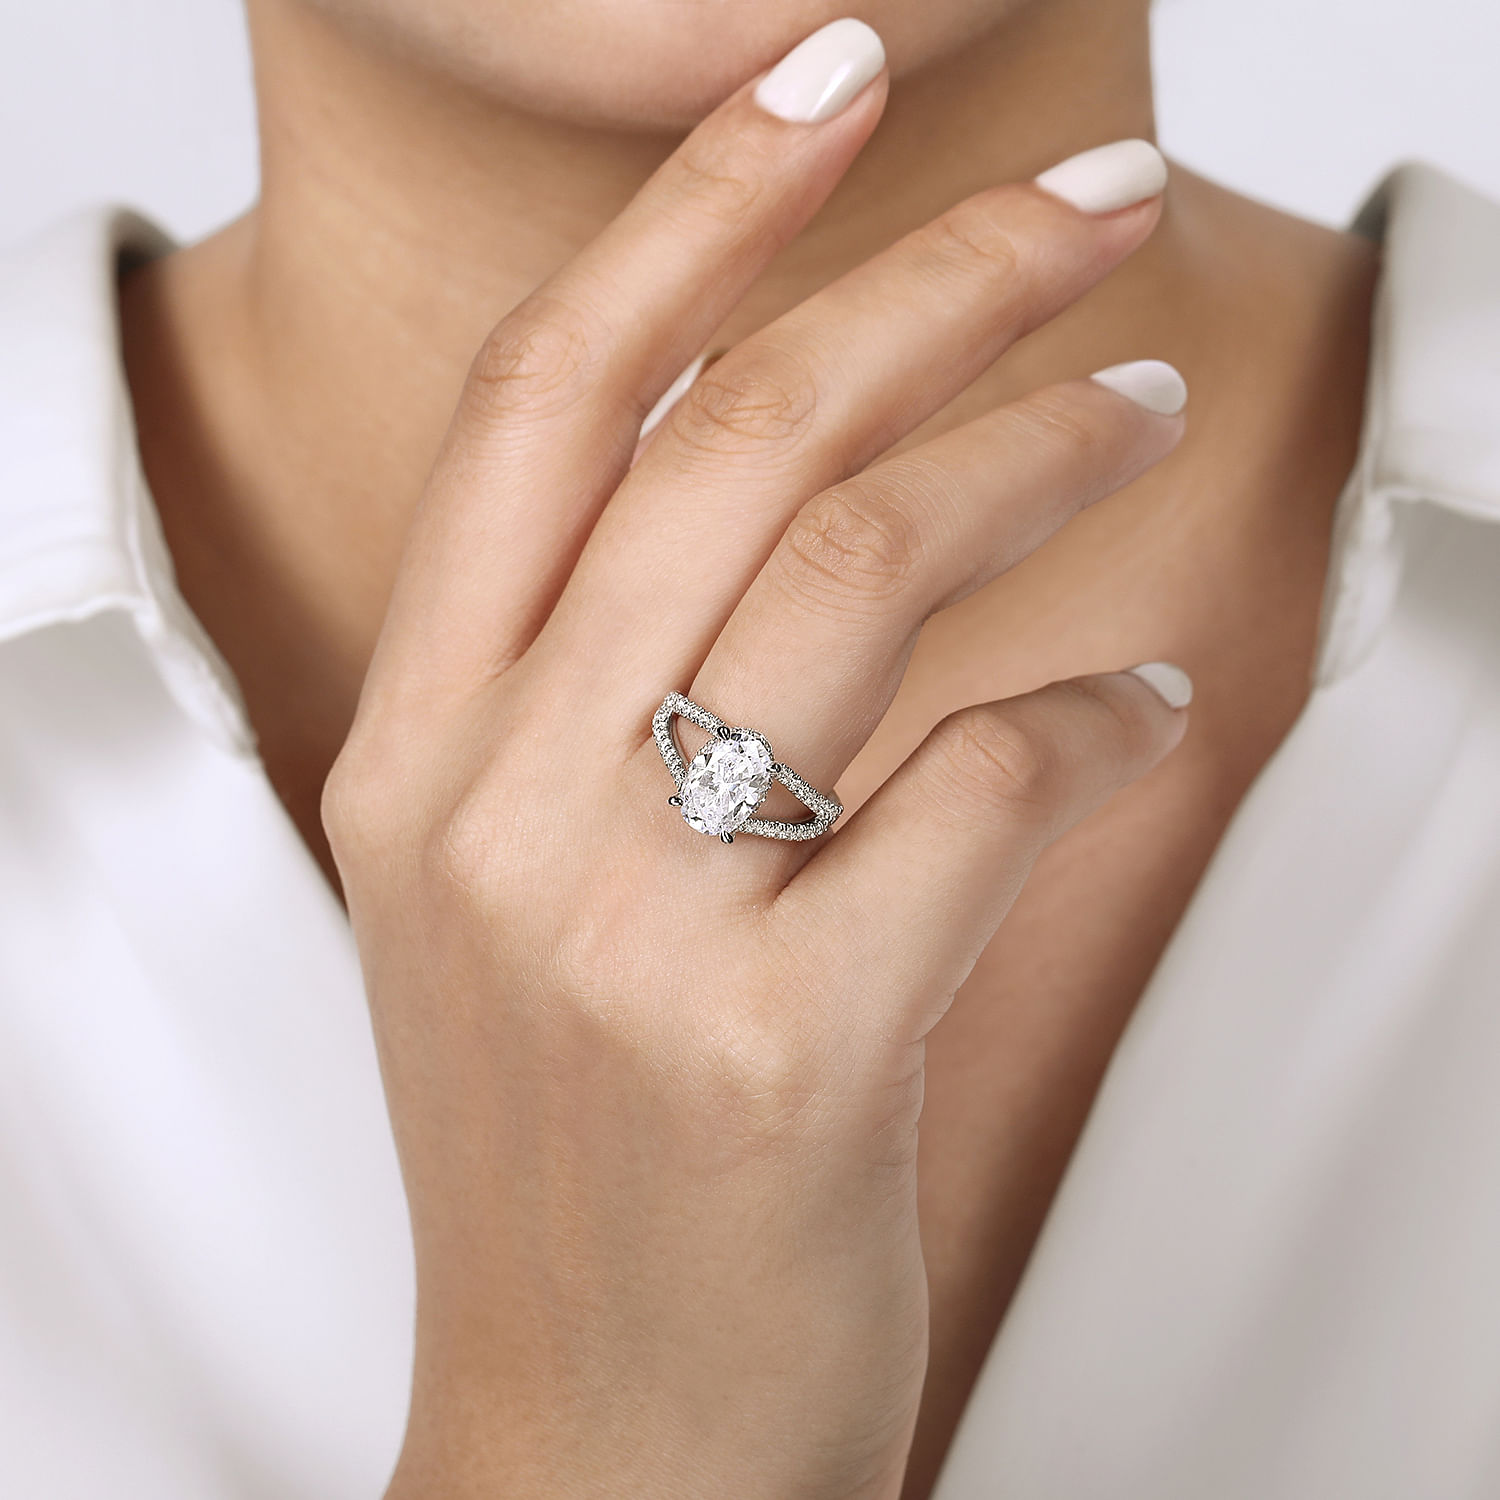 18K White Gold Oval Split Shank Diamond Engagement Ring